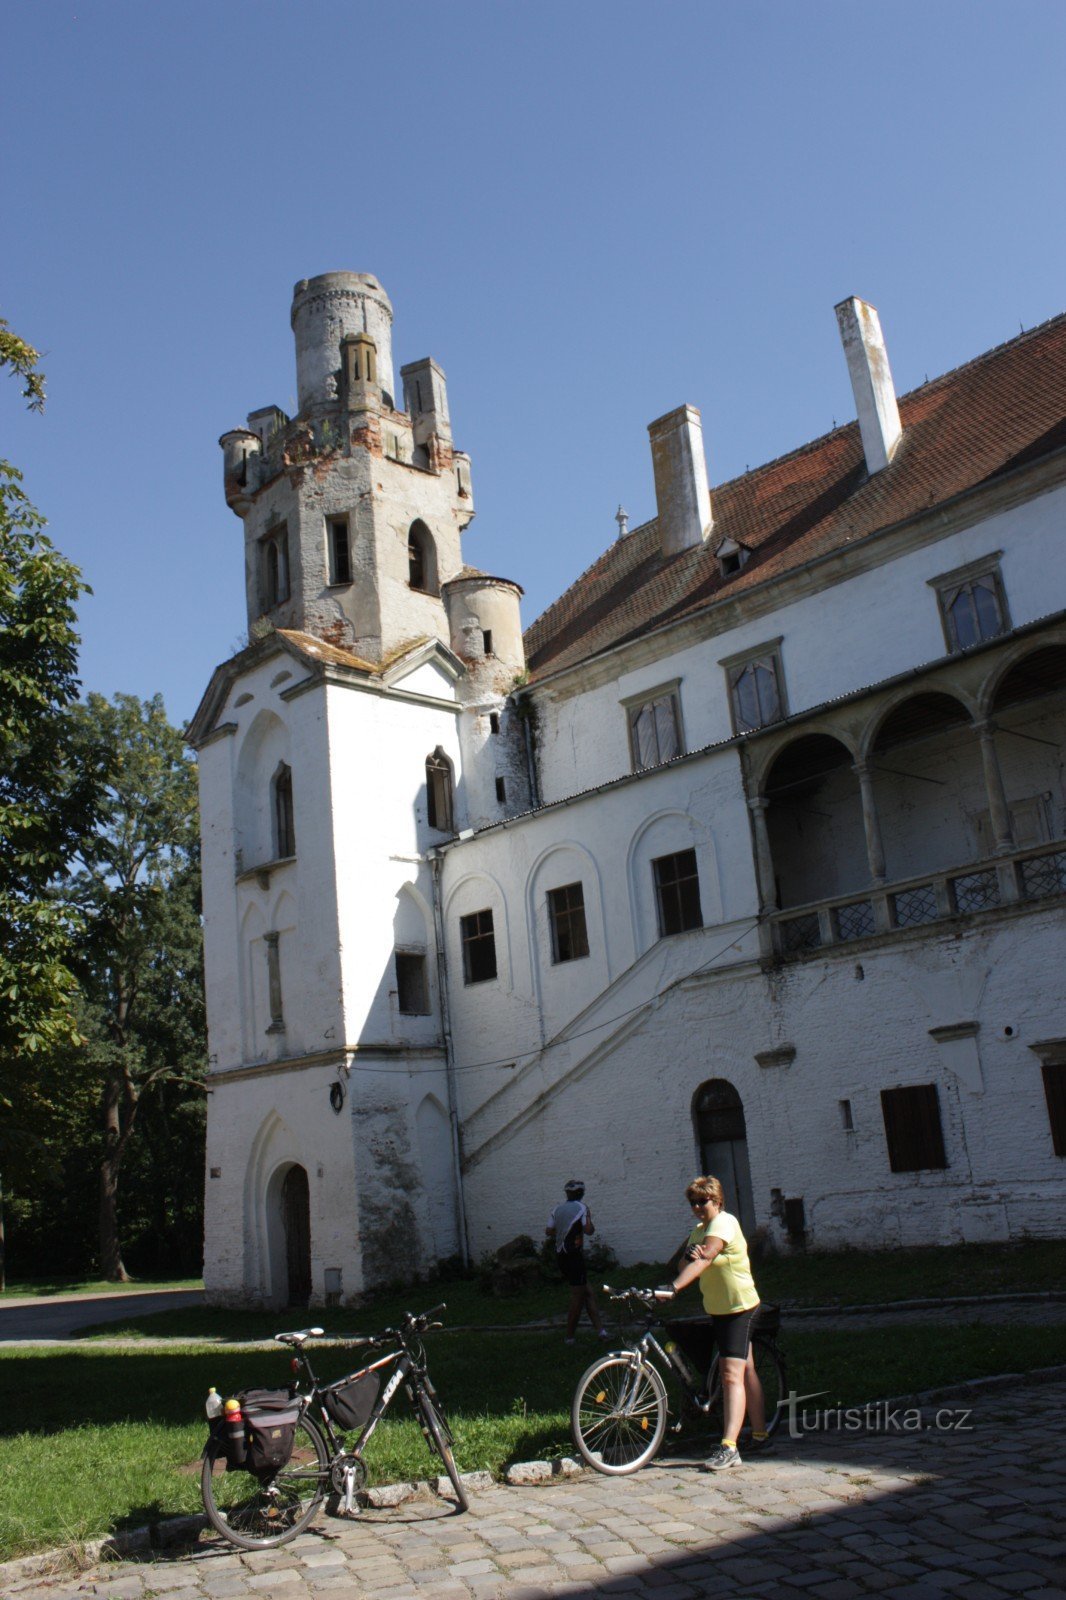 Kasteel Břeclav, oorspronkelijk een kasteel op de plaats van een heuvelfort uit de 11e eeuw